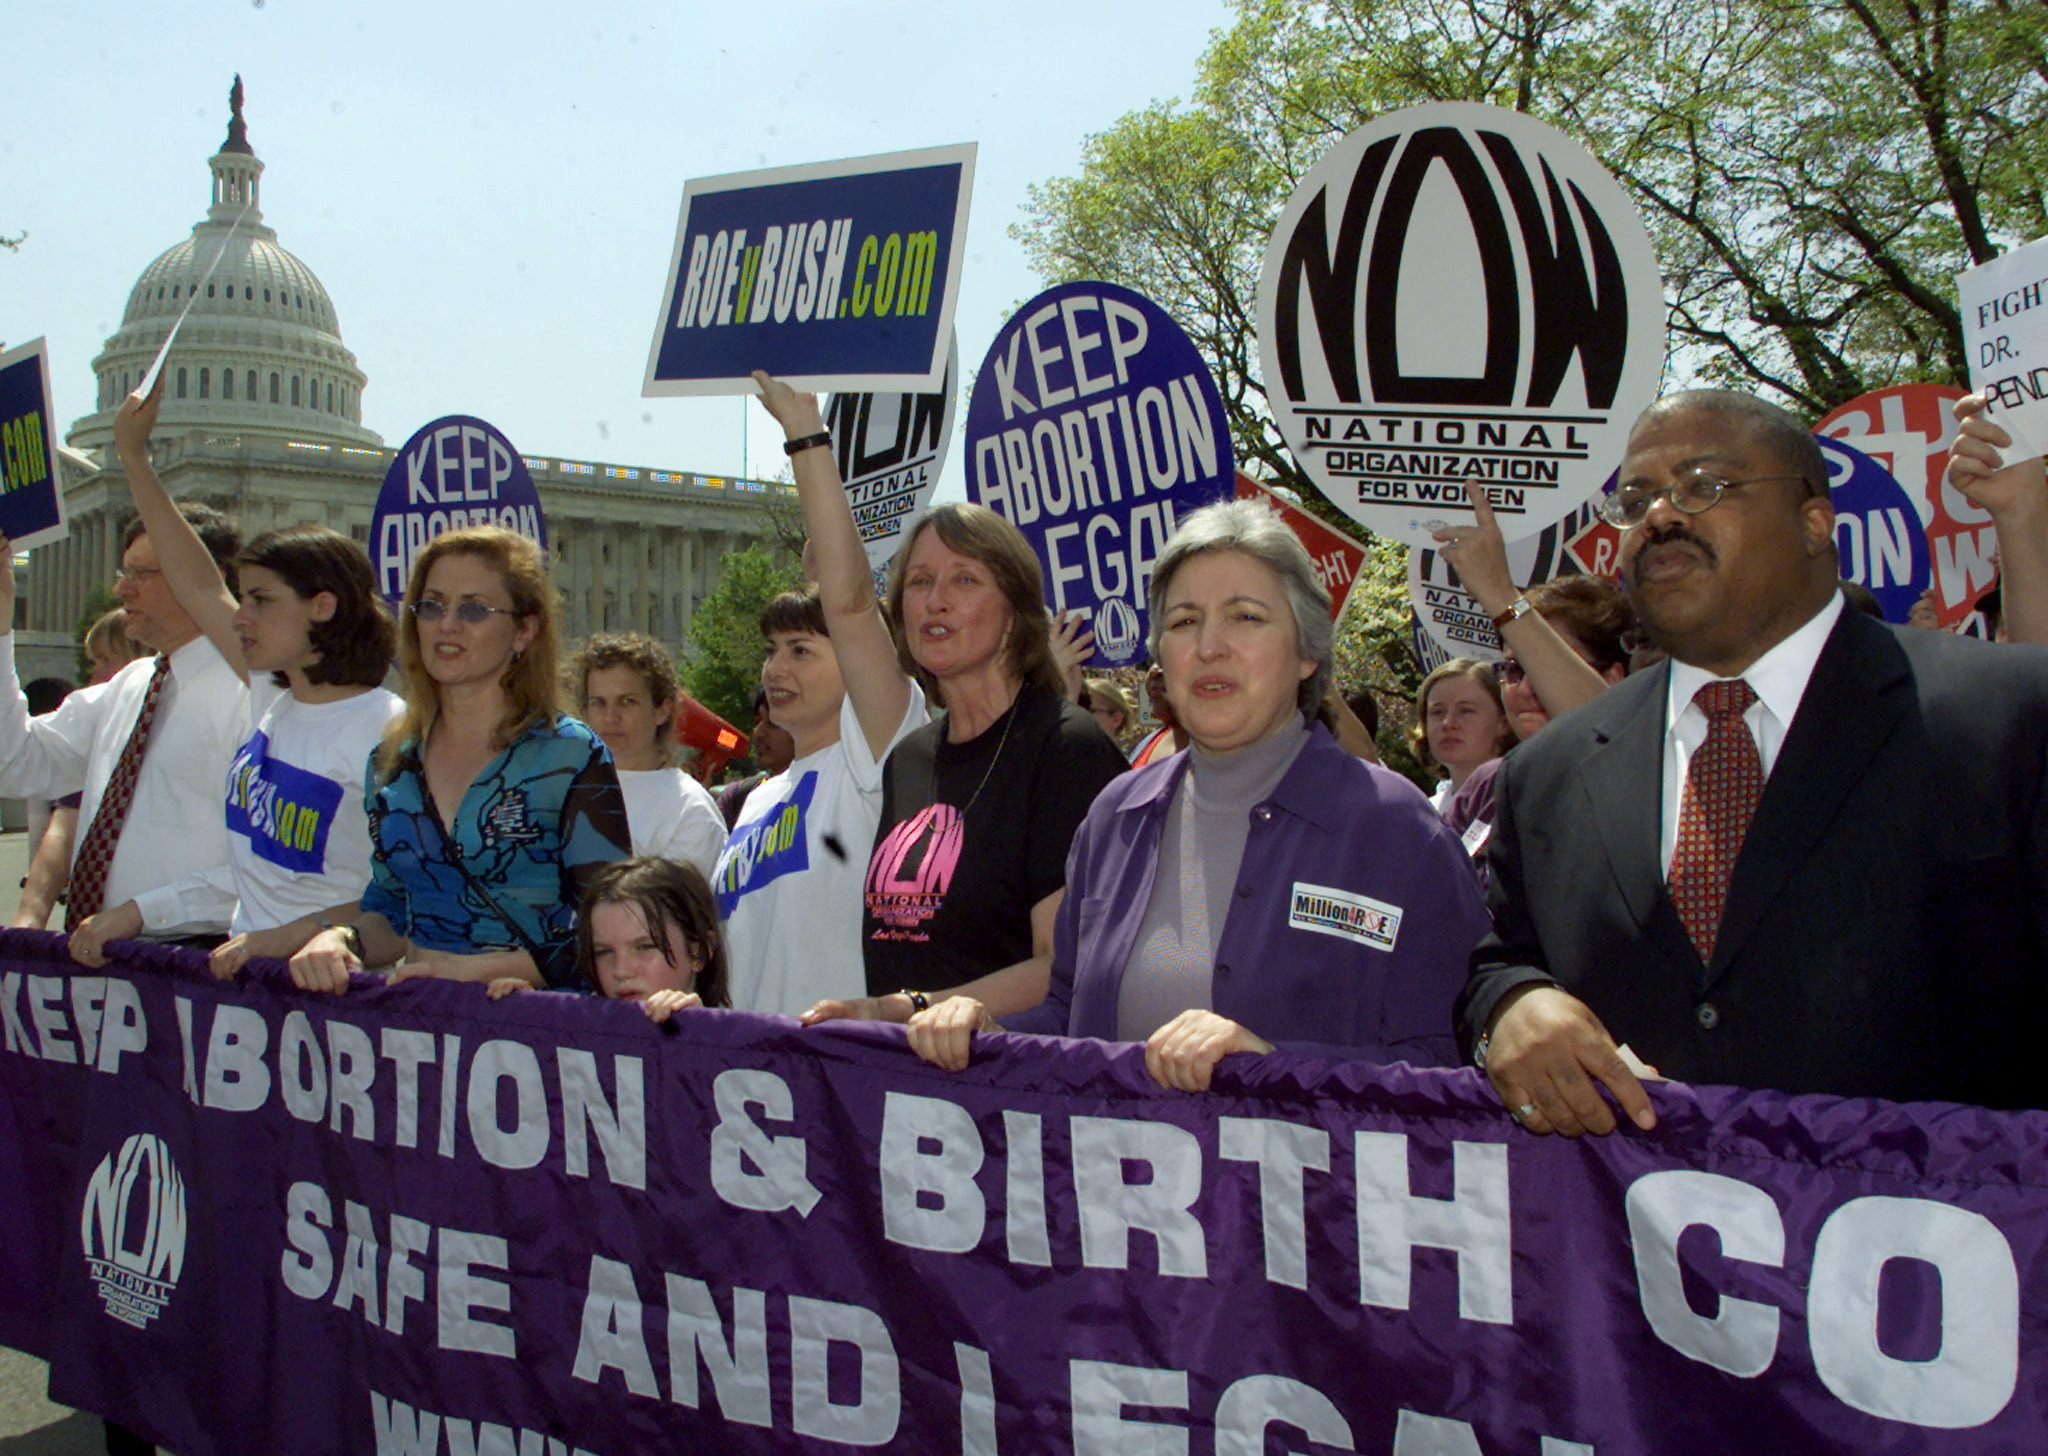 ΗΠΑ: Το δικαίωμα στην άμβλωση ανατράπηκε μετά από 50 χρόνια